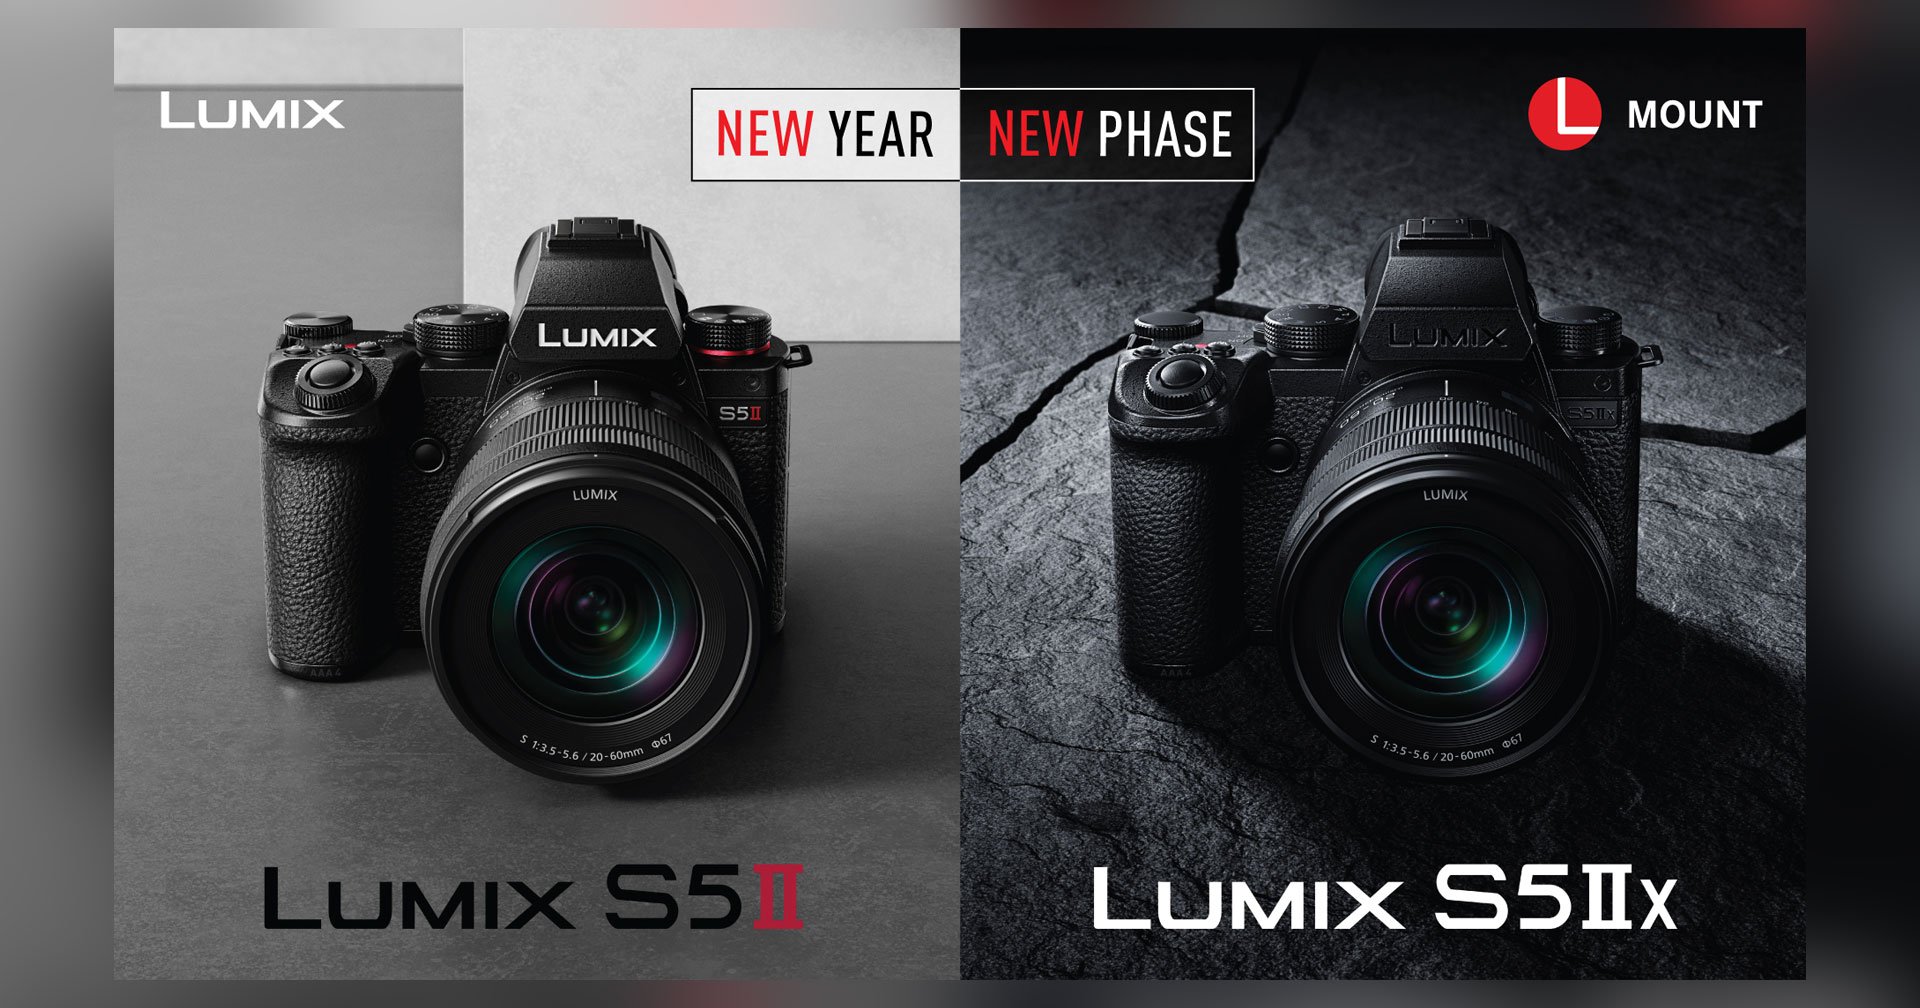 เปิดตัว Panasonic Lumix S5 II และ S5 IIX กล้องมิเรอร์เลสระบบโฟกัส Phase Detection ตัวแรกในซีรีส์ Lumix